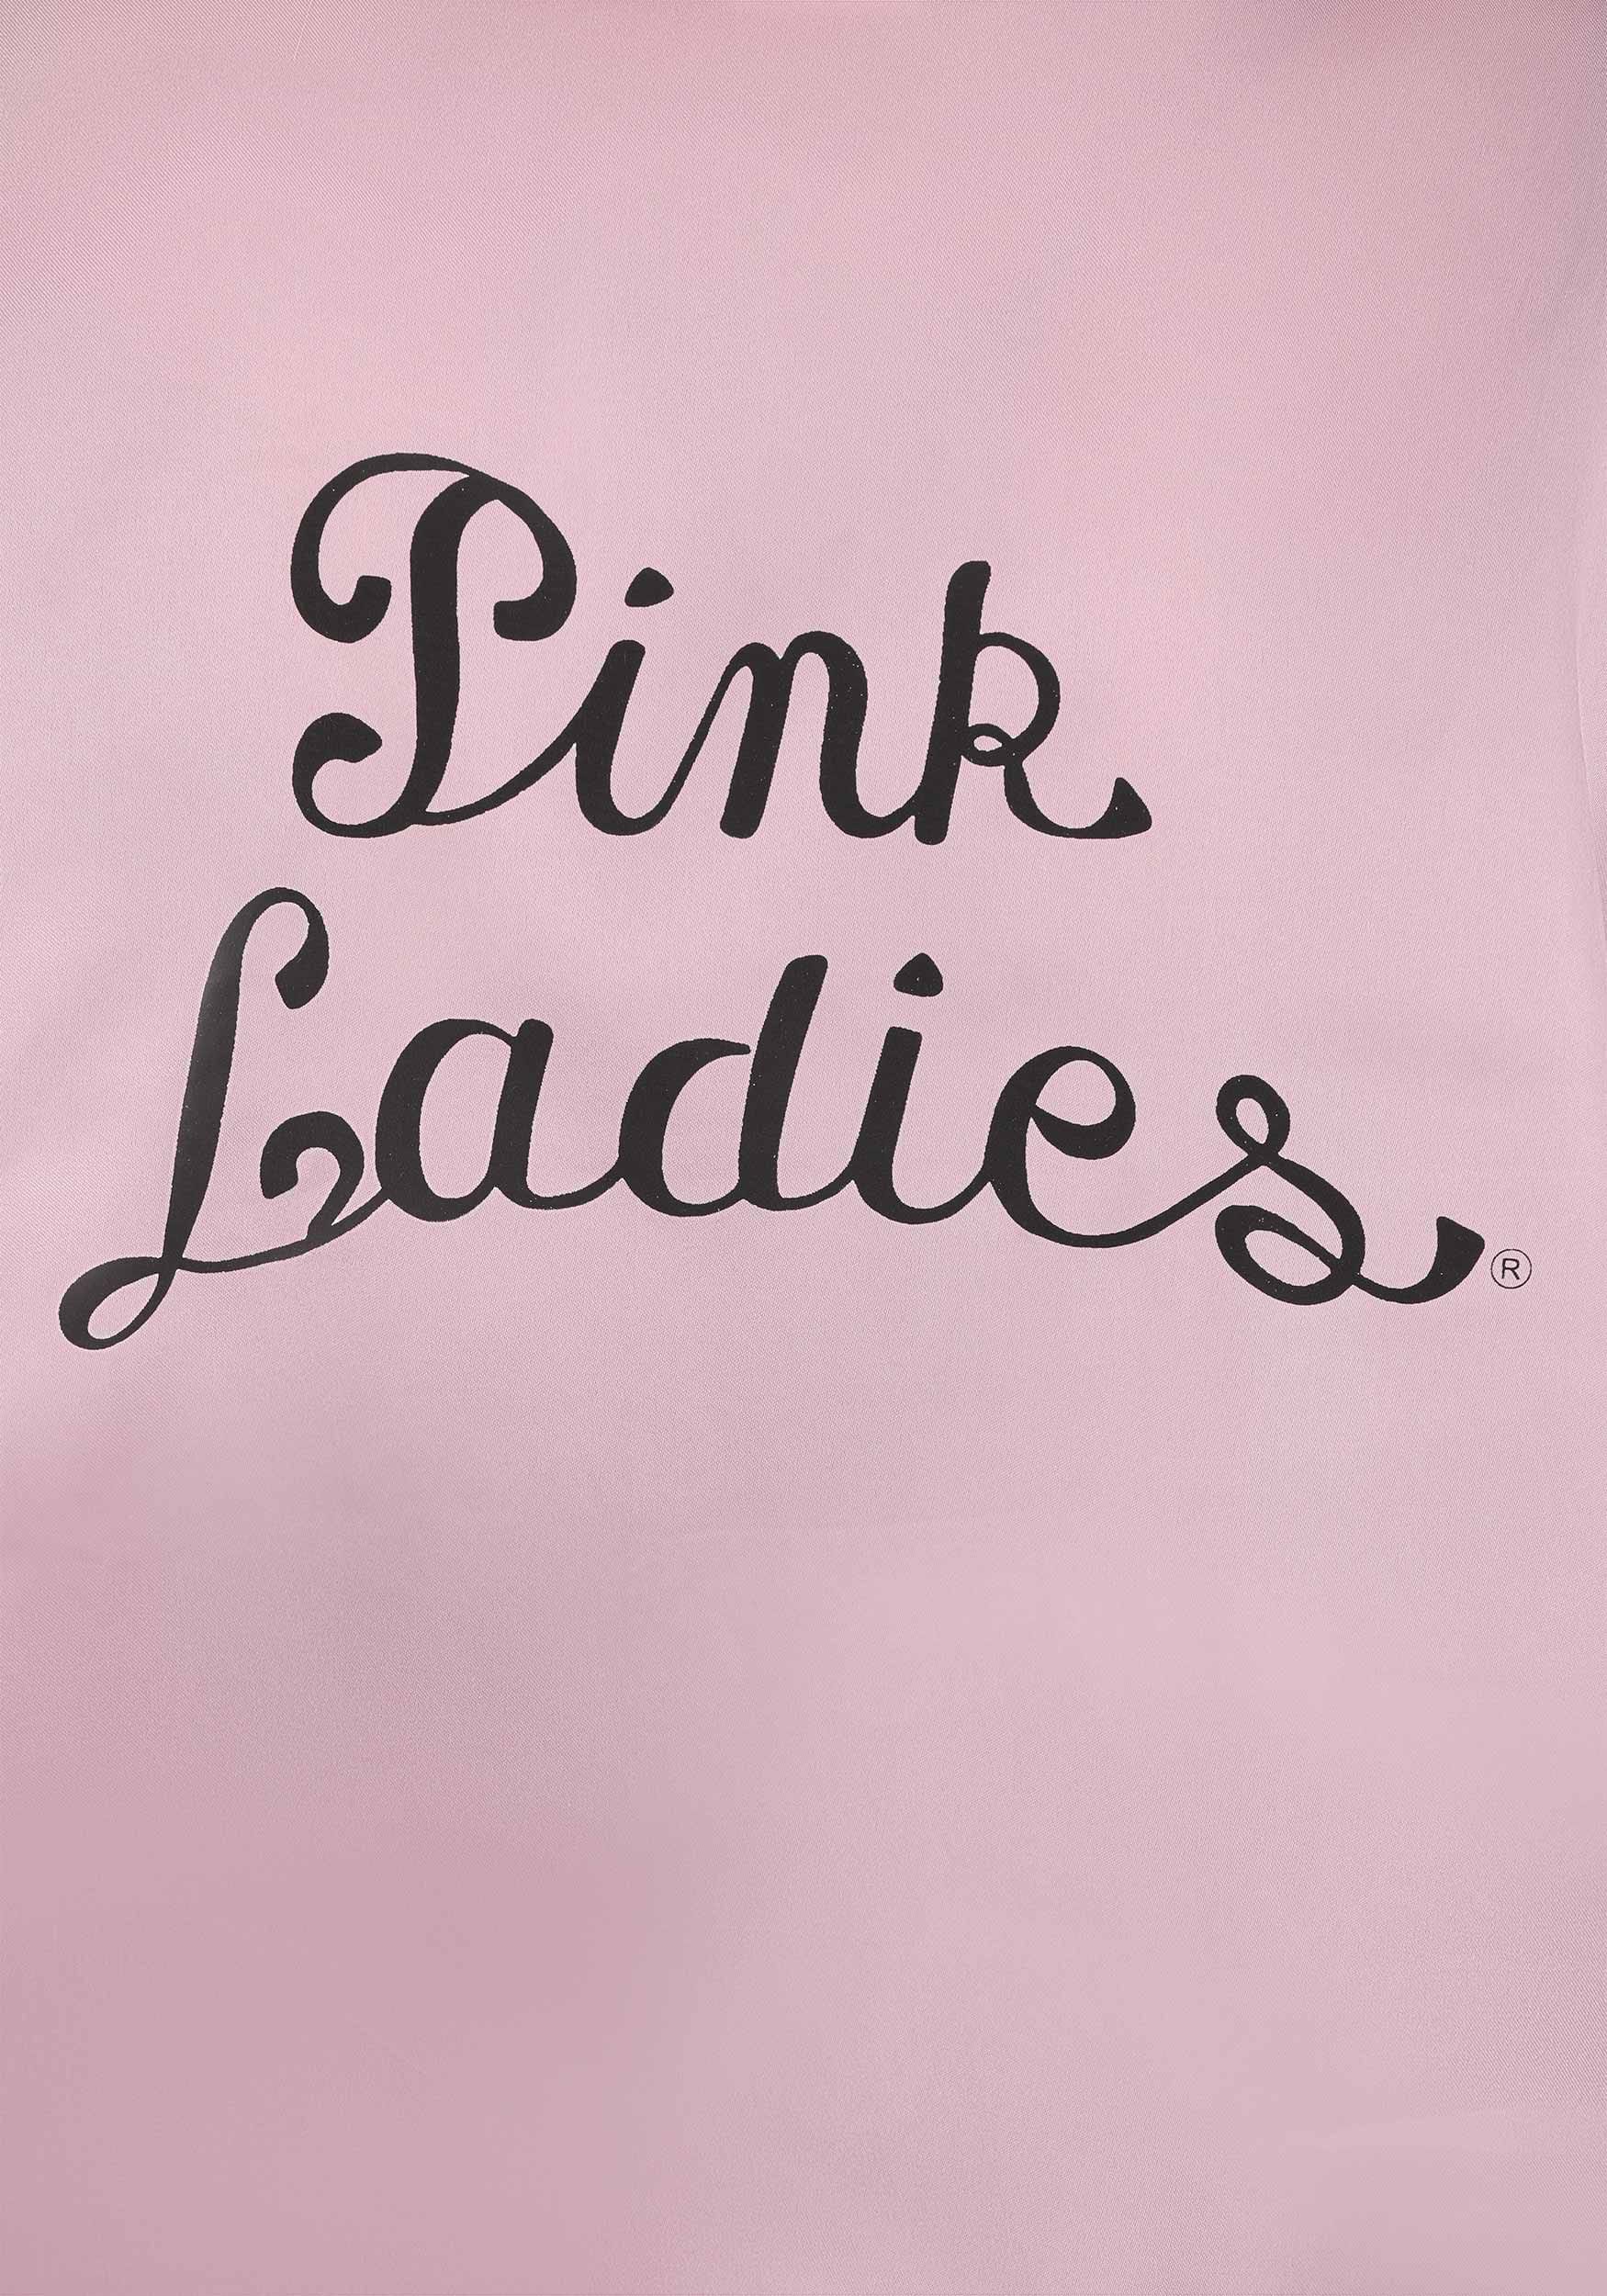 Adult Grease Pink Ladies Costume Jacket